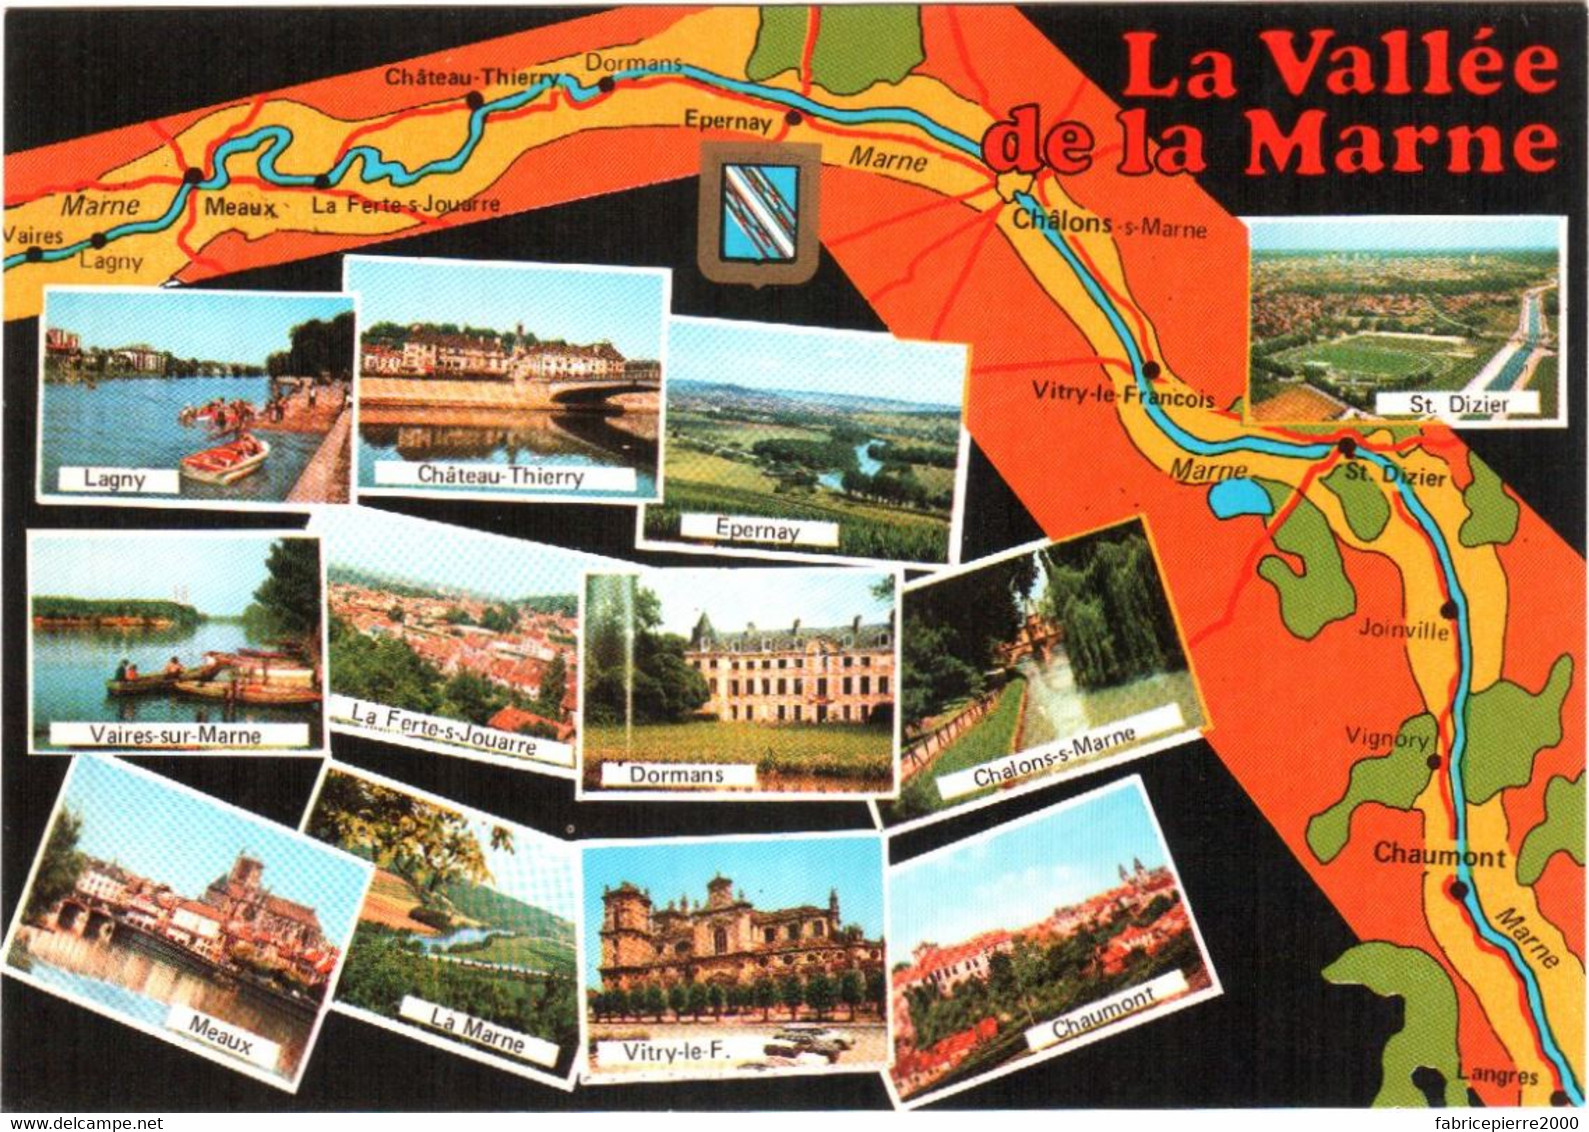 CPM 02, 77, 51, 52 - La Vallée De La Marne: Lagny, Vaires-sur-Marne, La Ferté-sous-Jouarre, Meaux, Chaumont, Dormans ... - Champagne - Ardenne